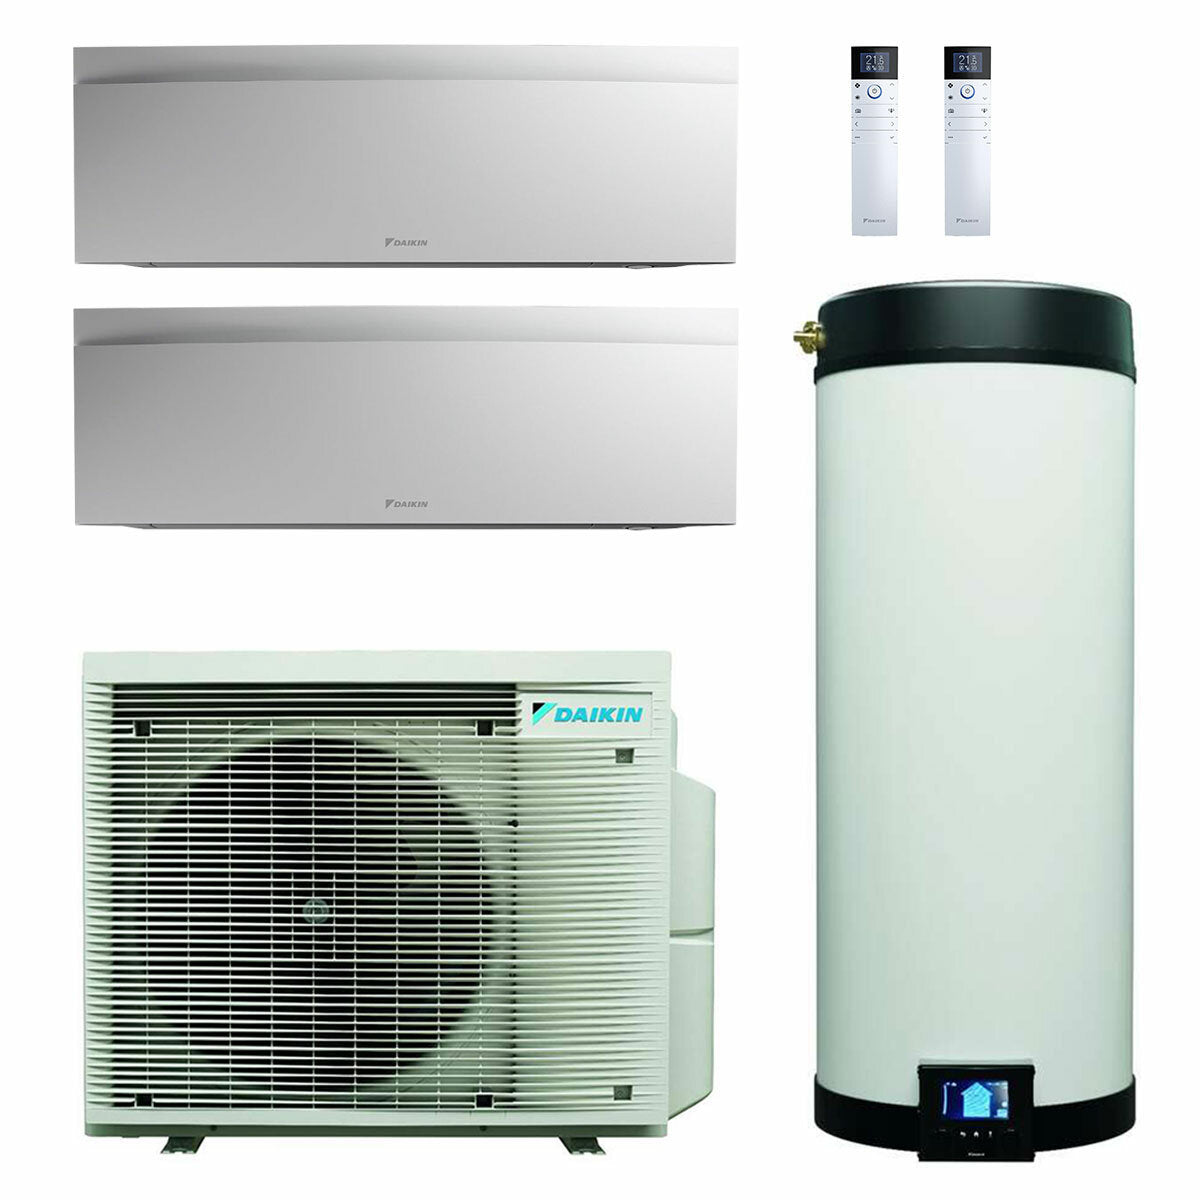 Système de climatisation double split Daikin Multi+ et eau chaude sanitaire - Unités intérieures Emura 3 blanc 9000+9000 BTU - Réservoir 120 l